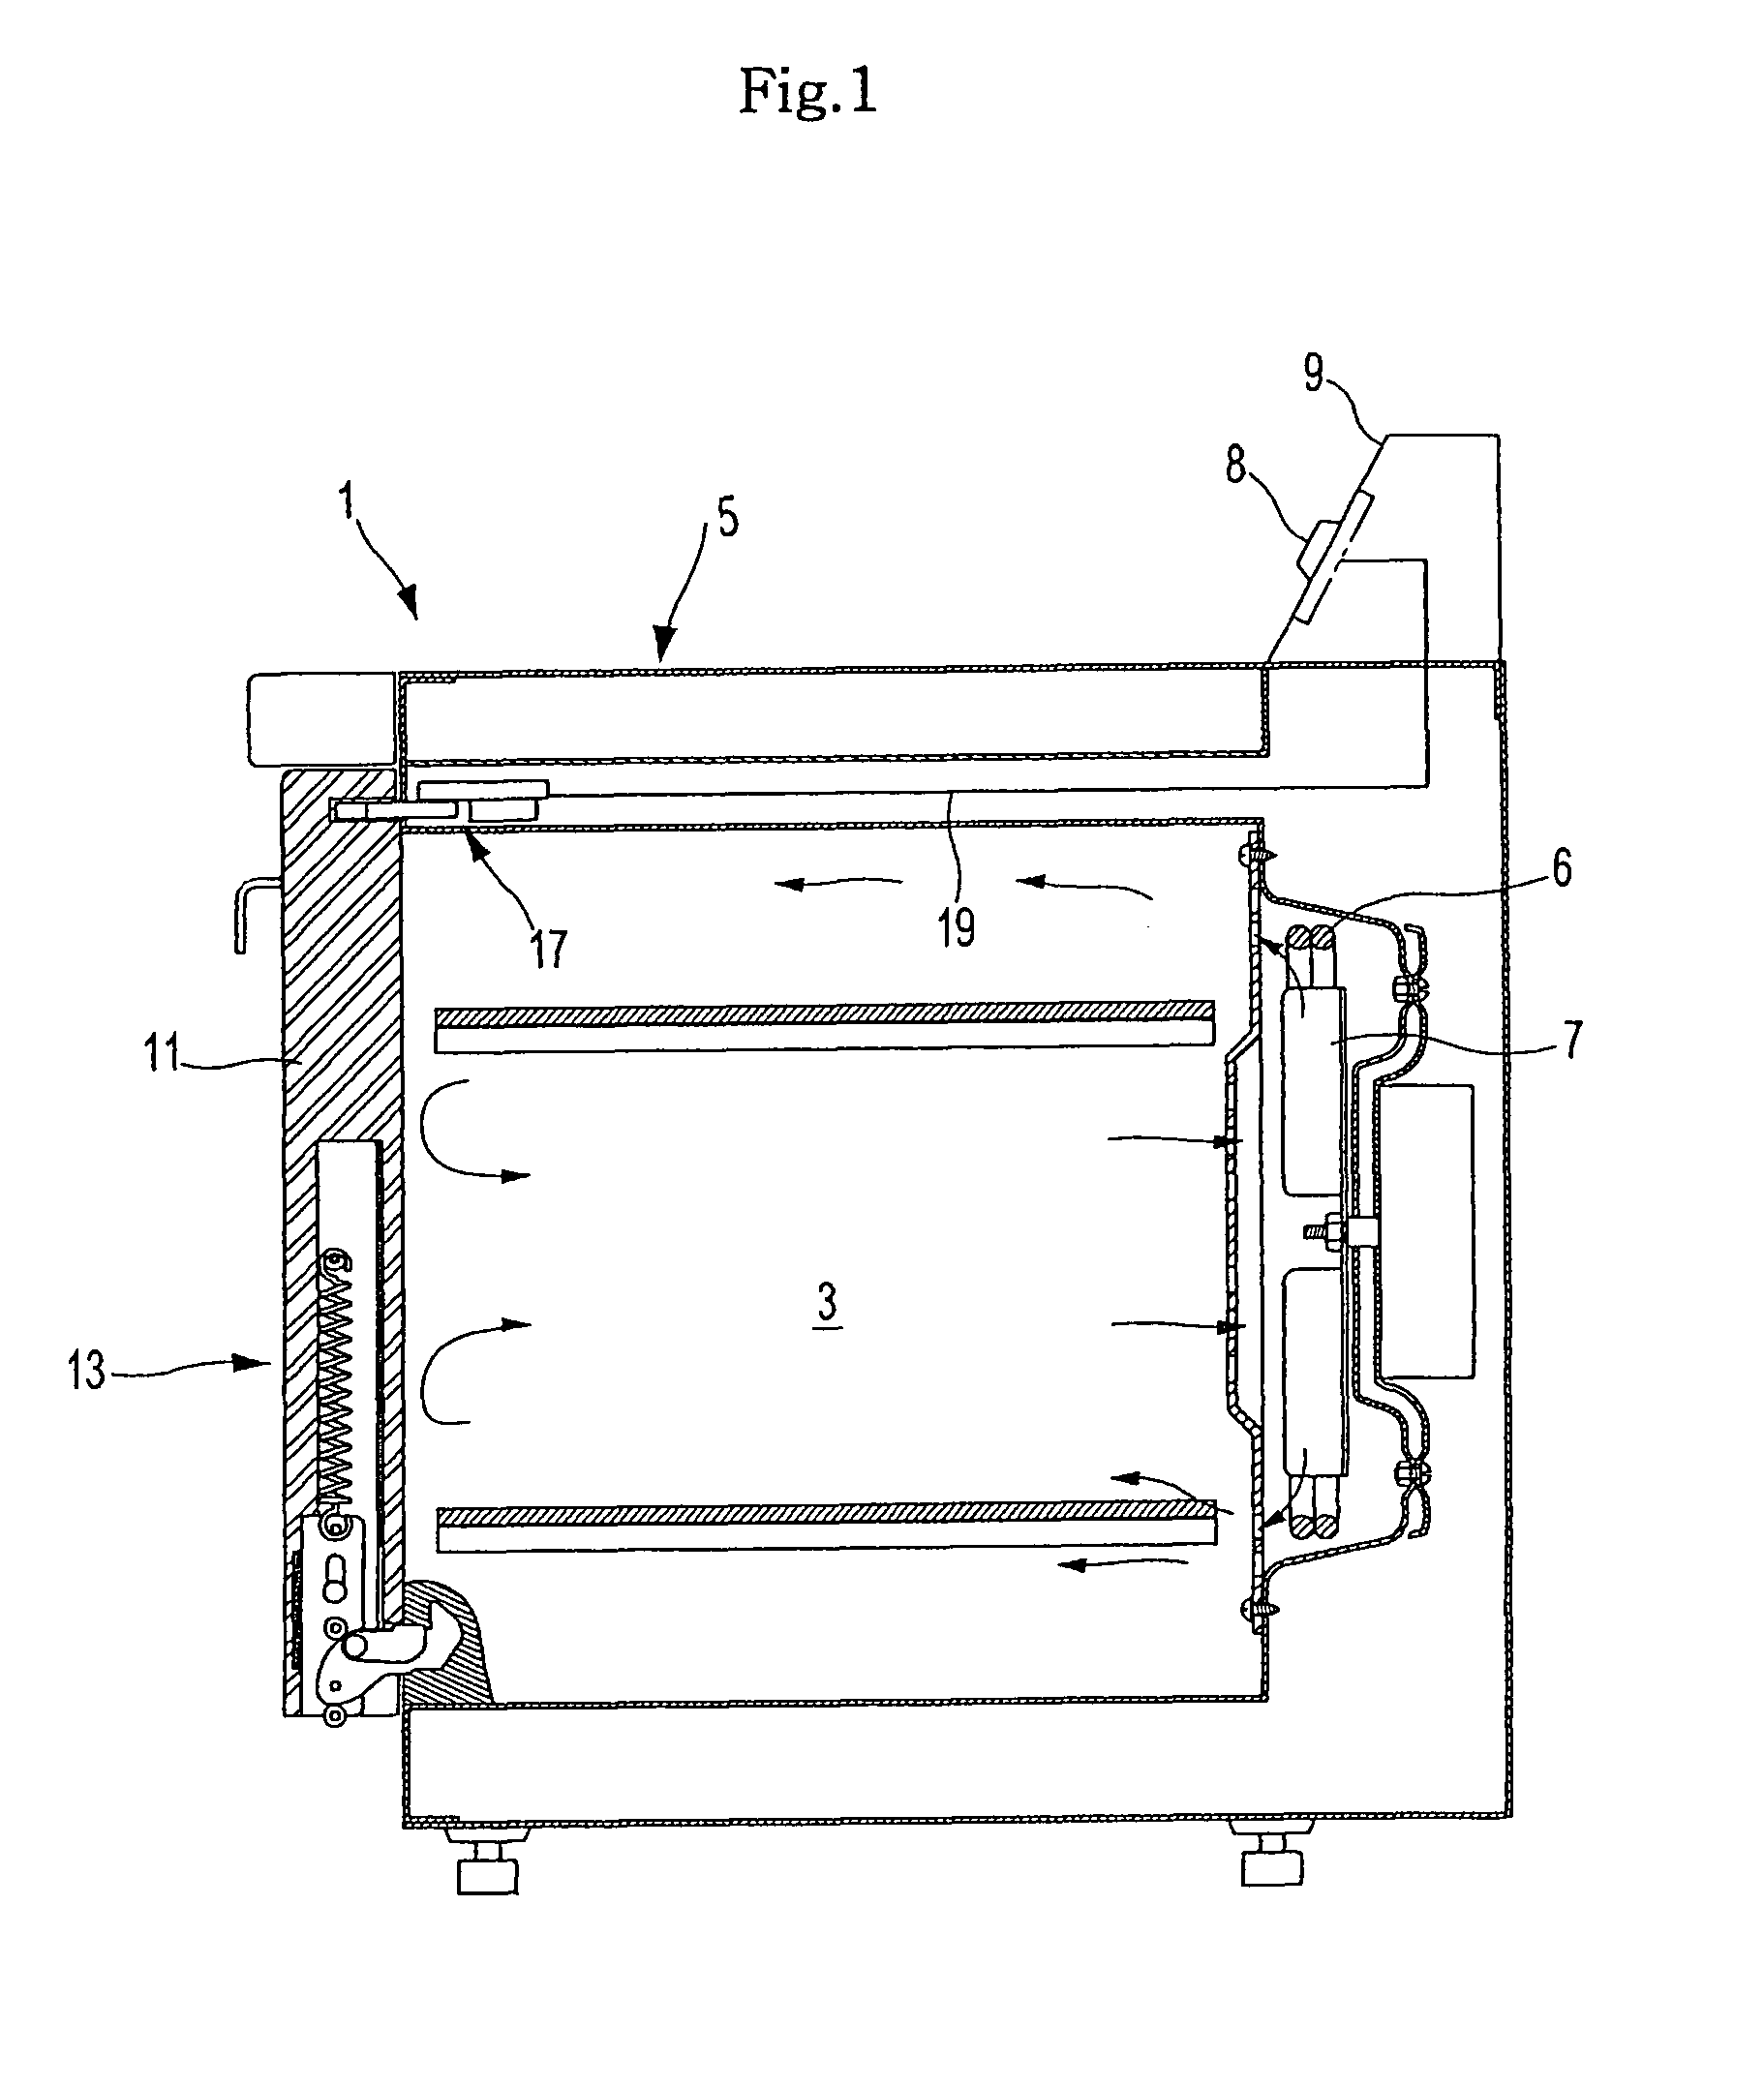 Heating cooker with hinged door